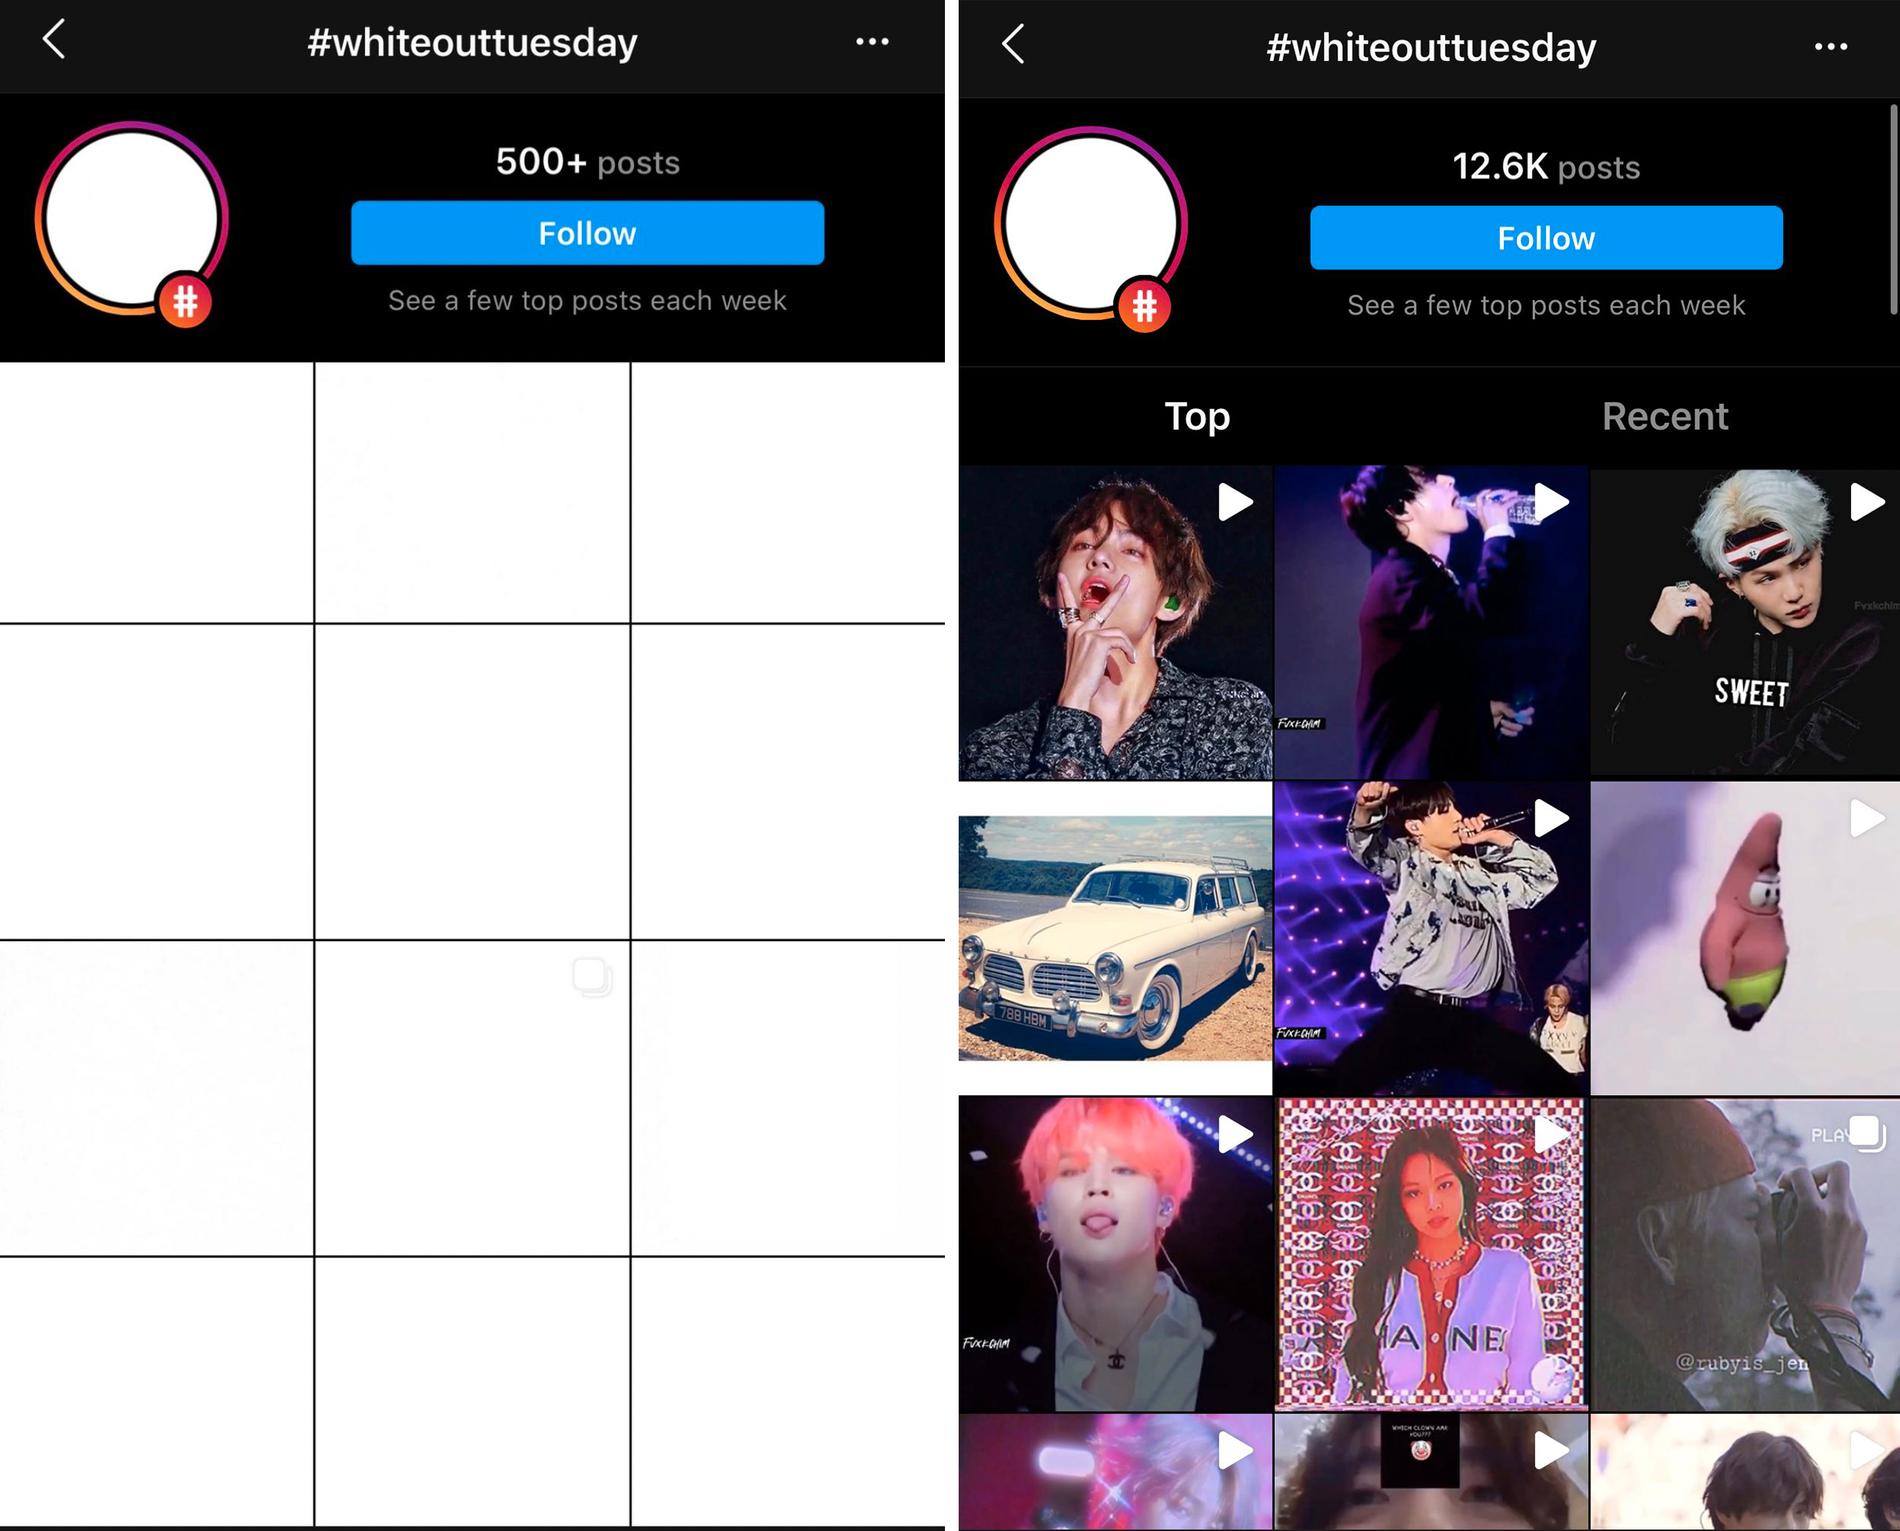 Hashtaggen #Whiteouttuesday på Instagram, ett svar på BLM-rörelsens #blackouttuesday, som det såg ut före och efter K-pop-fansens inblandning i tisdags. 